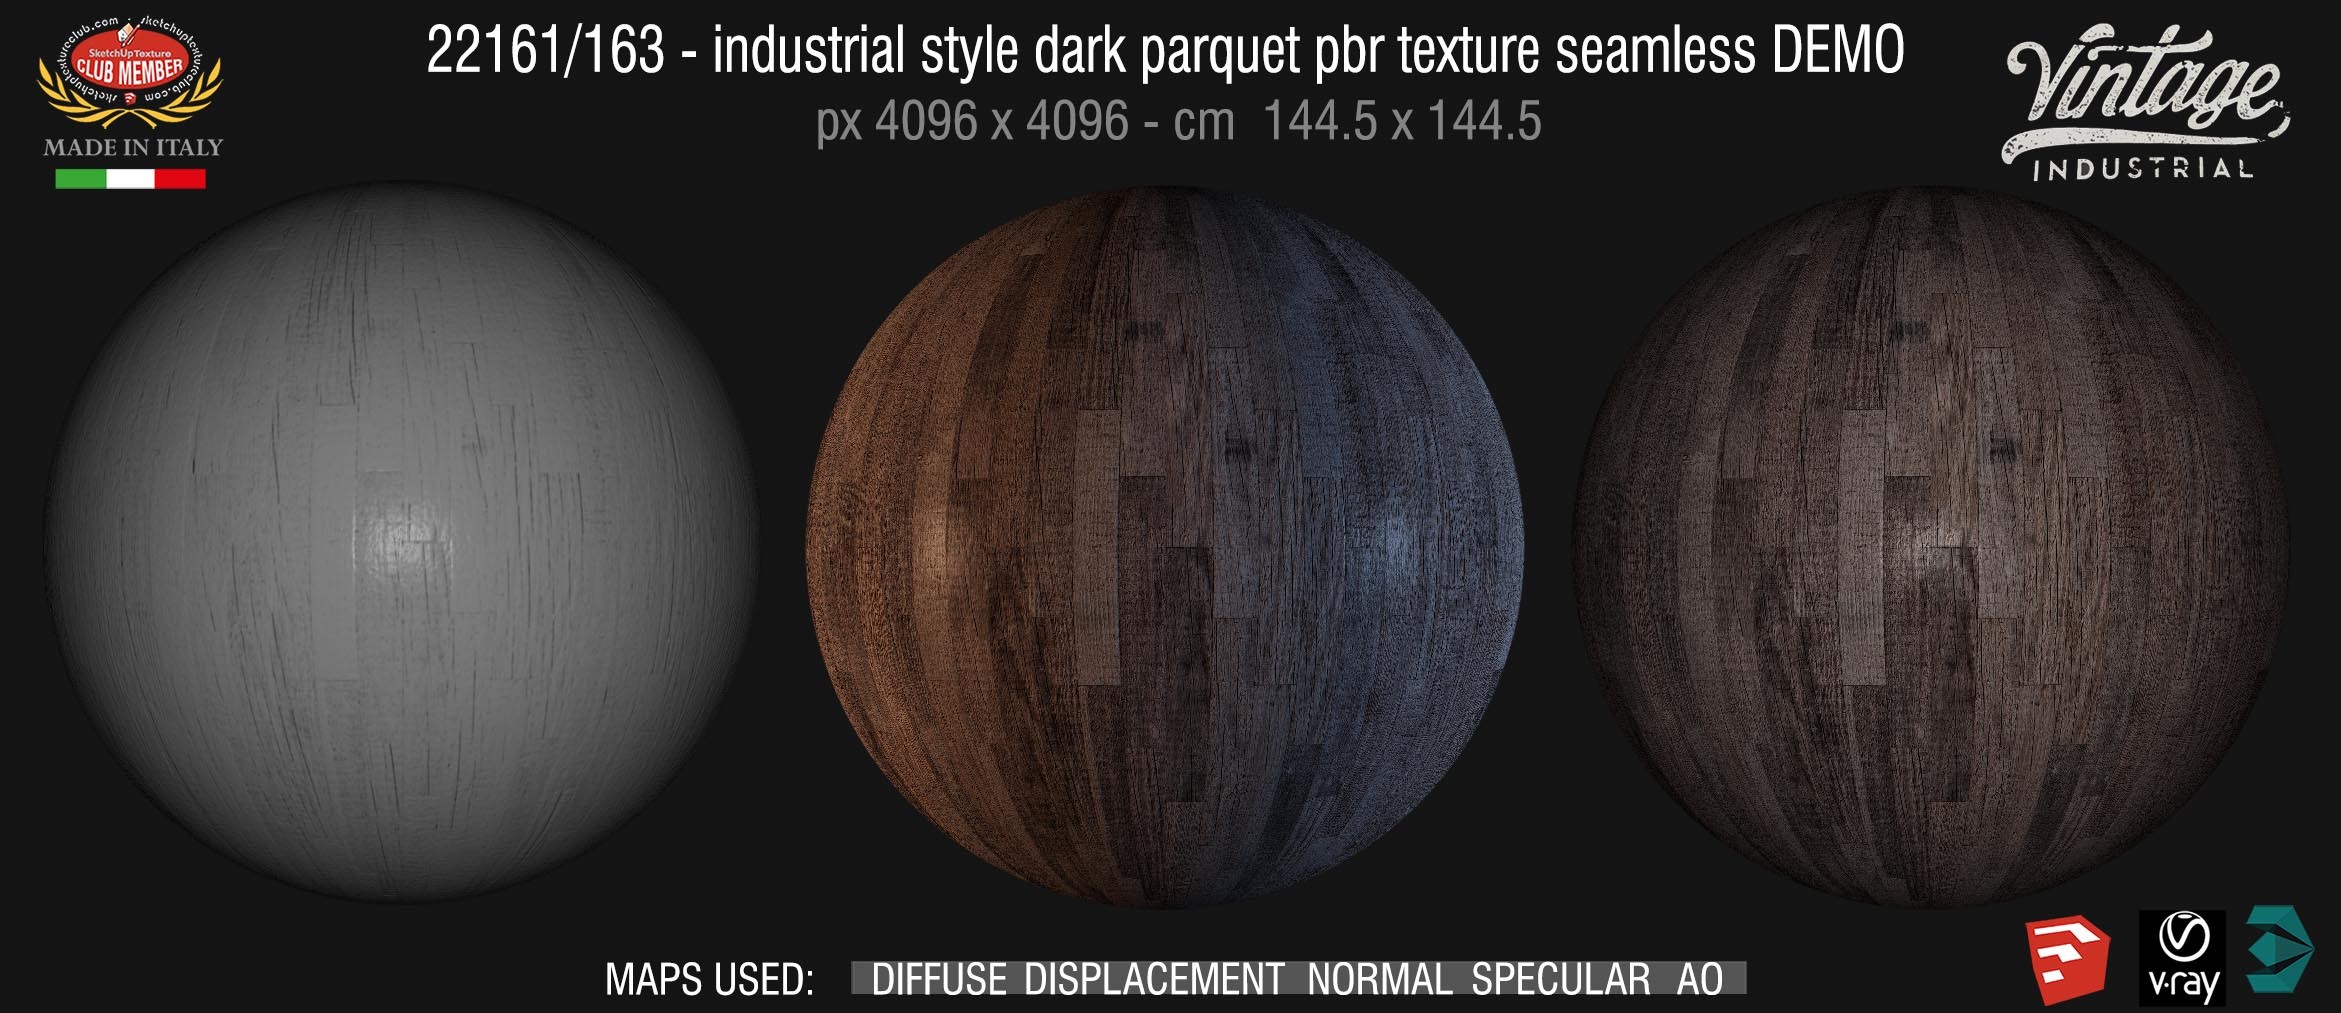 22191/163 industrial style dark parquet pbr texture seamless